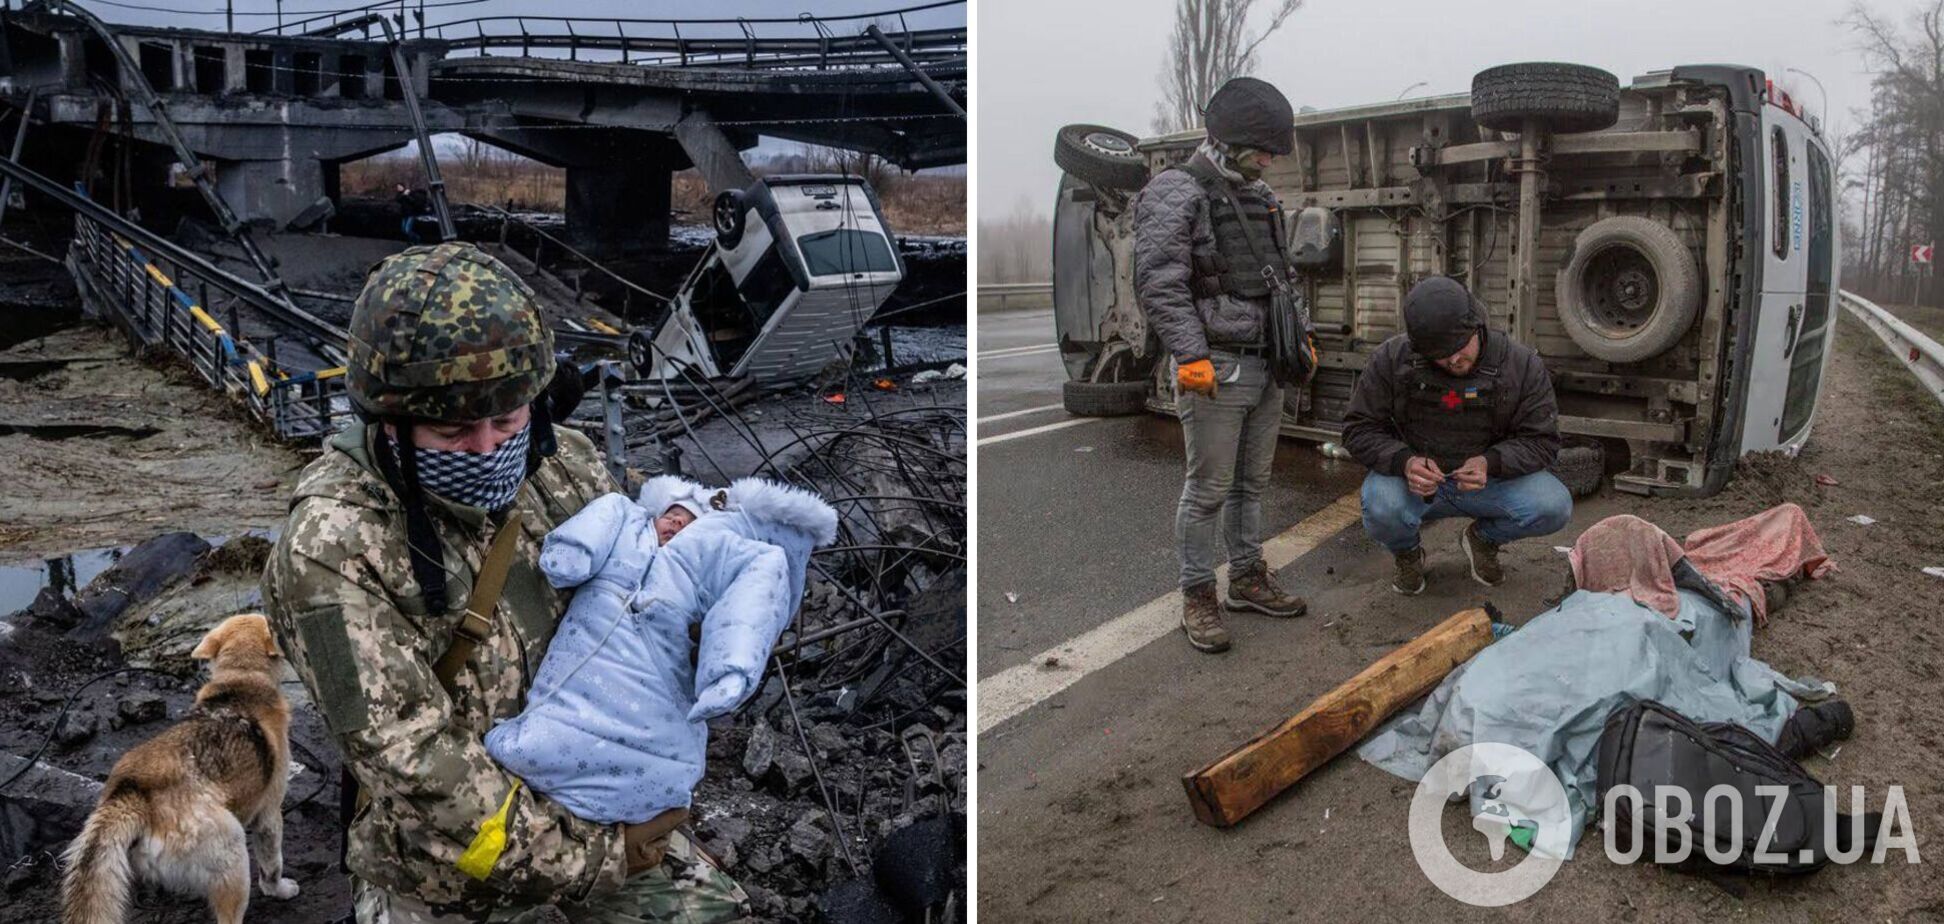 Посетителям популярного российского сайта показали снимки жертв резни в Буче